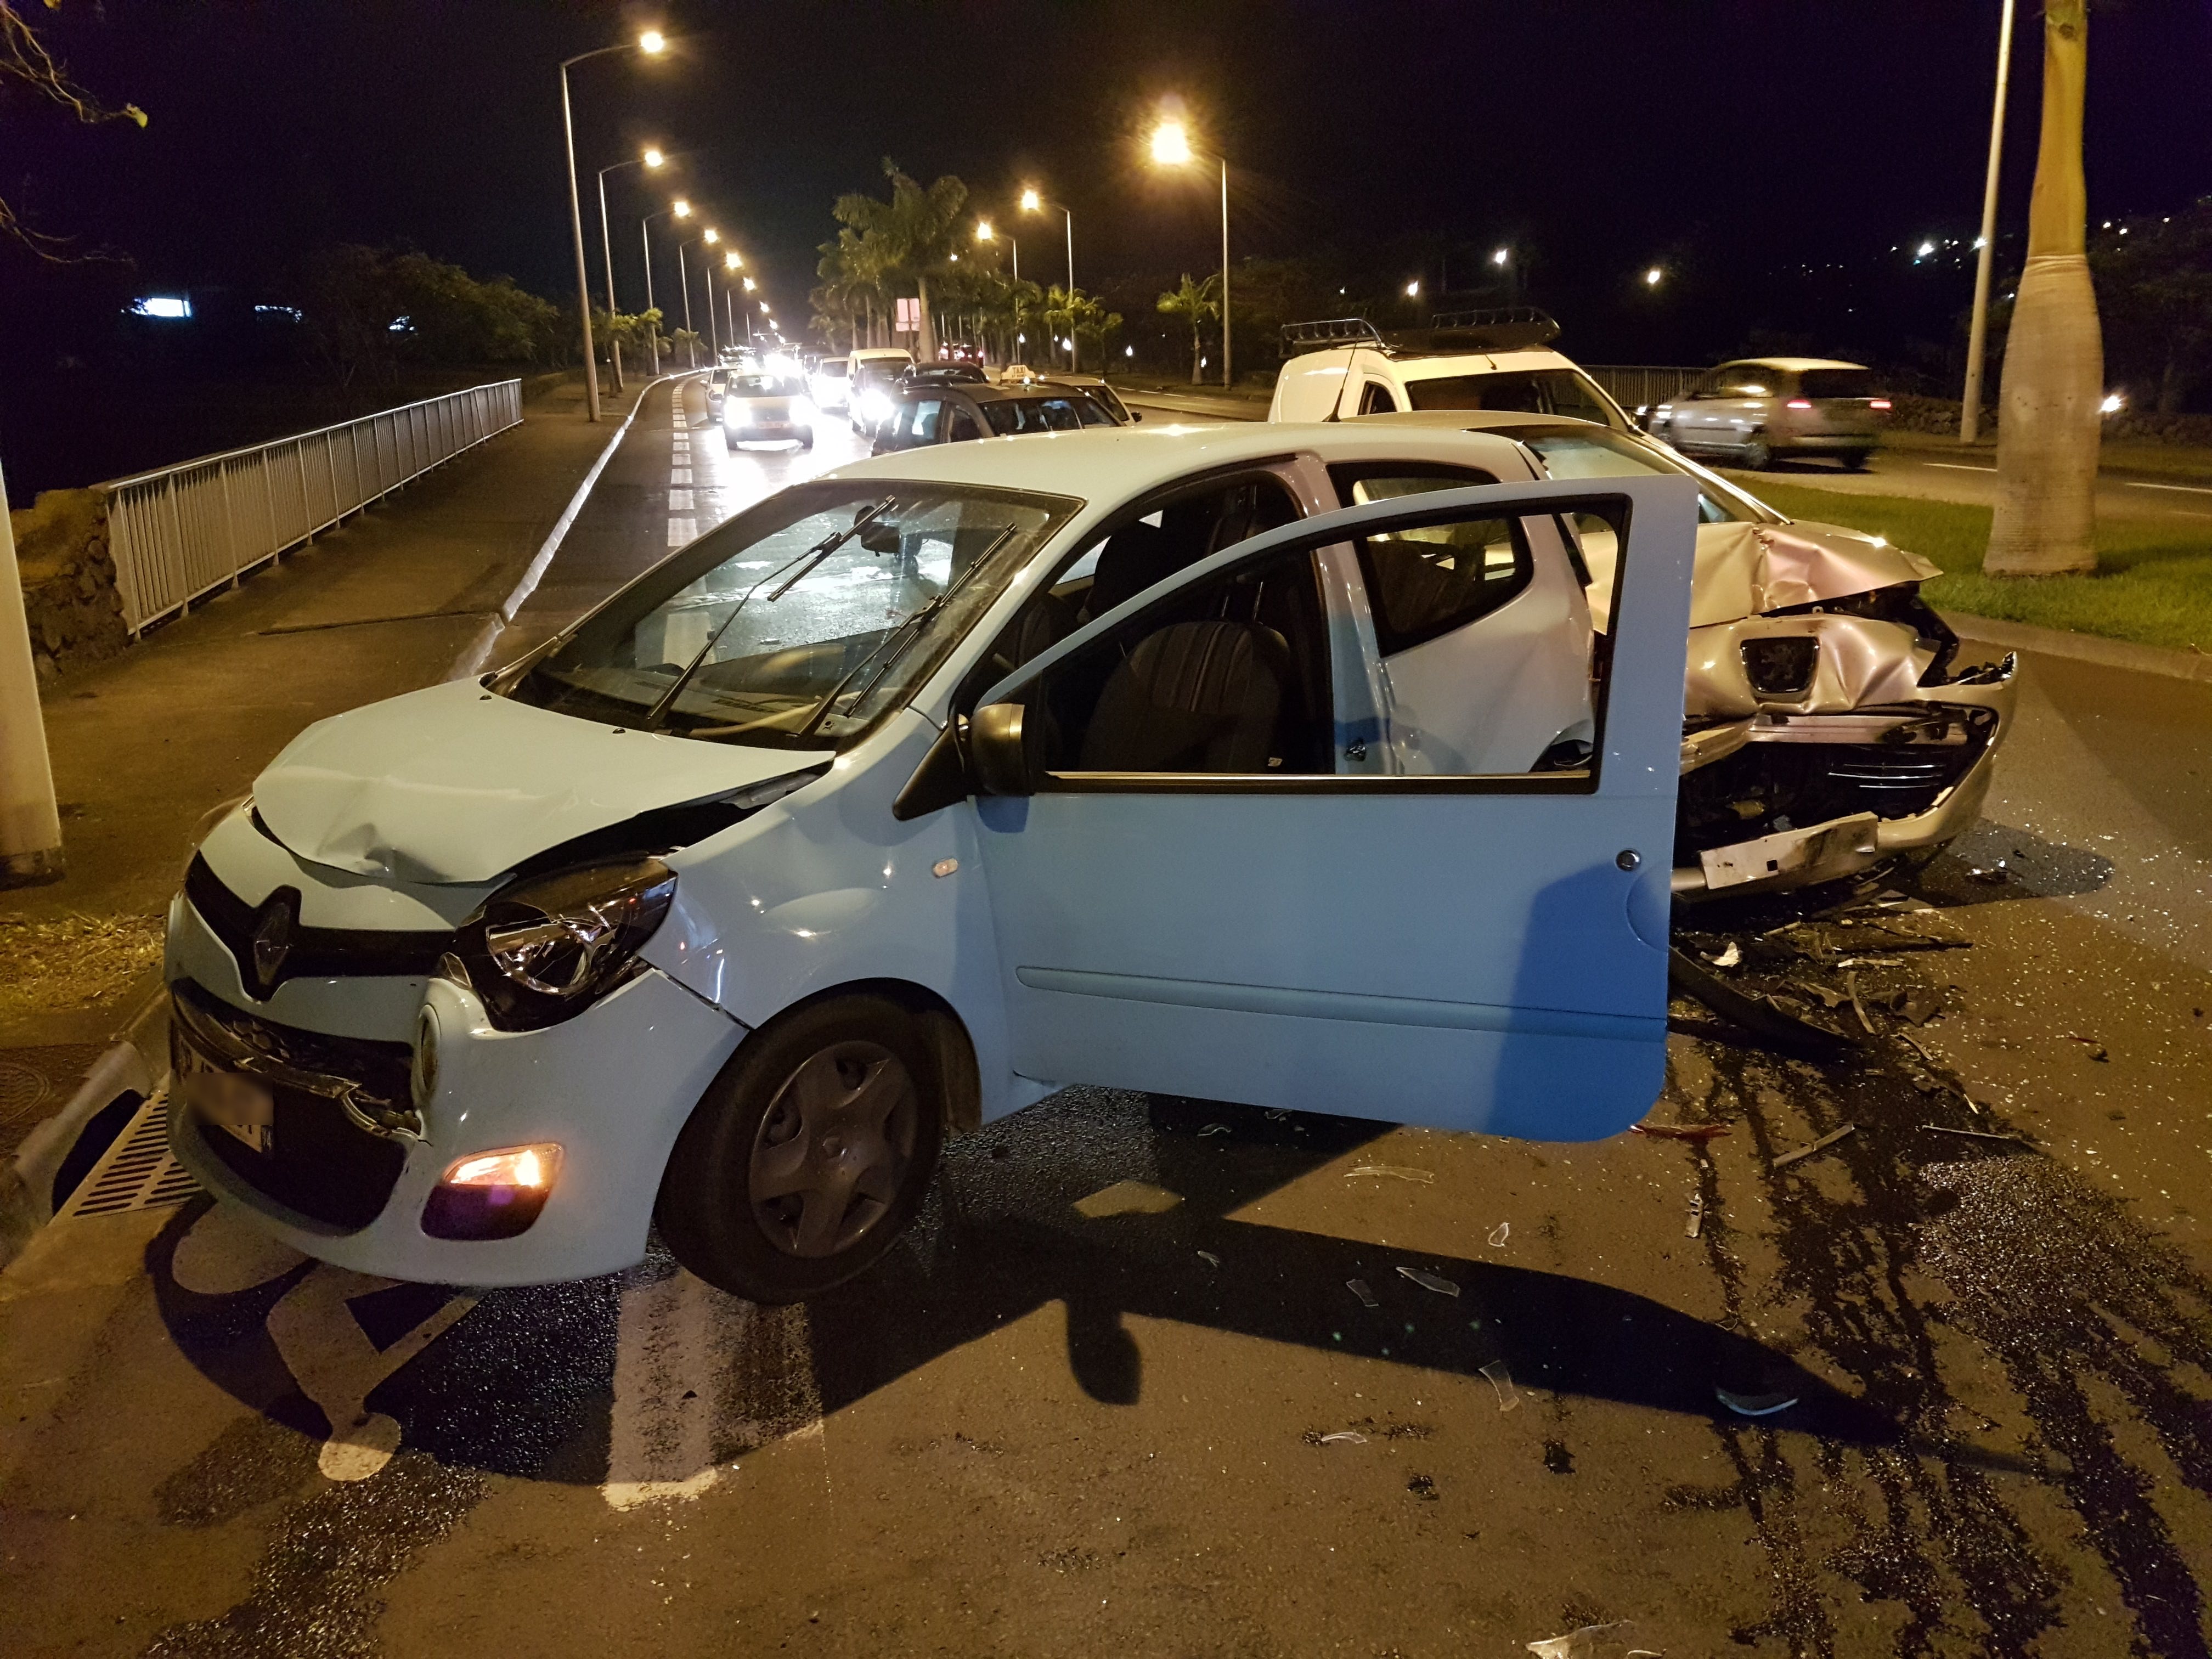 Accident spectaculaire à Saint-Denis entre une Twingo et une 308 décapotable